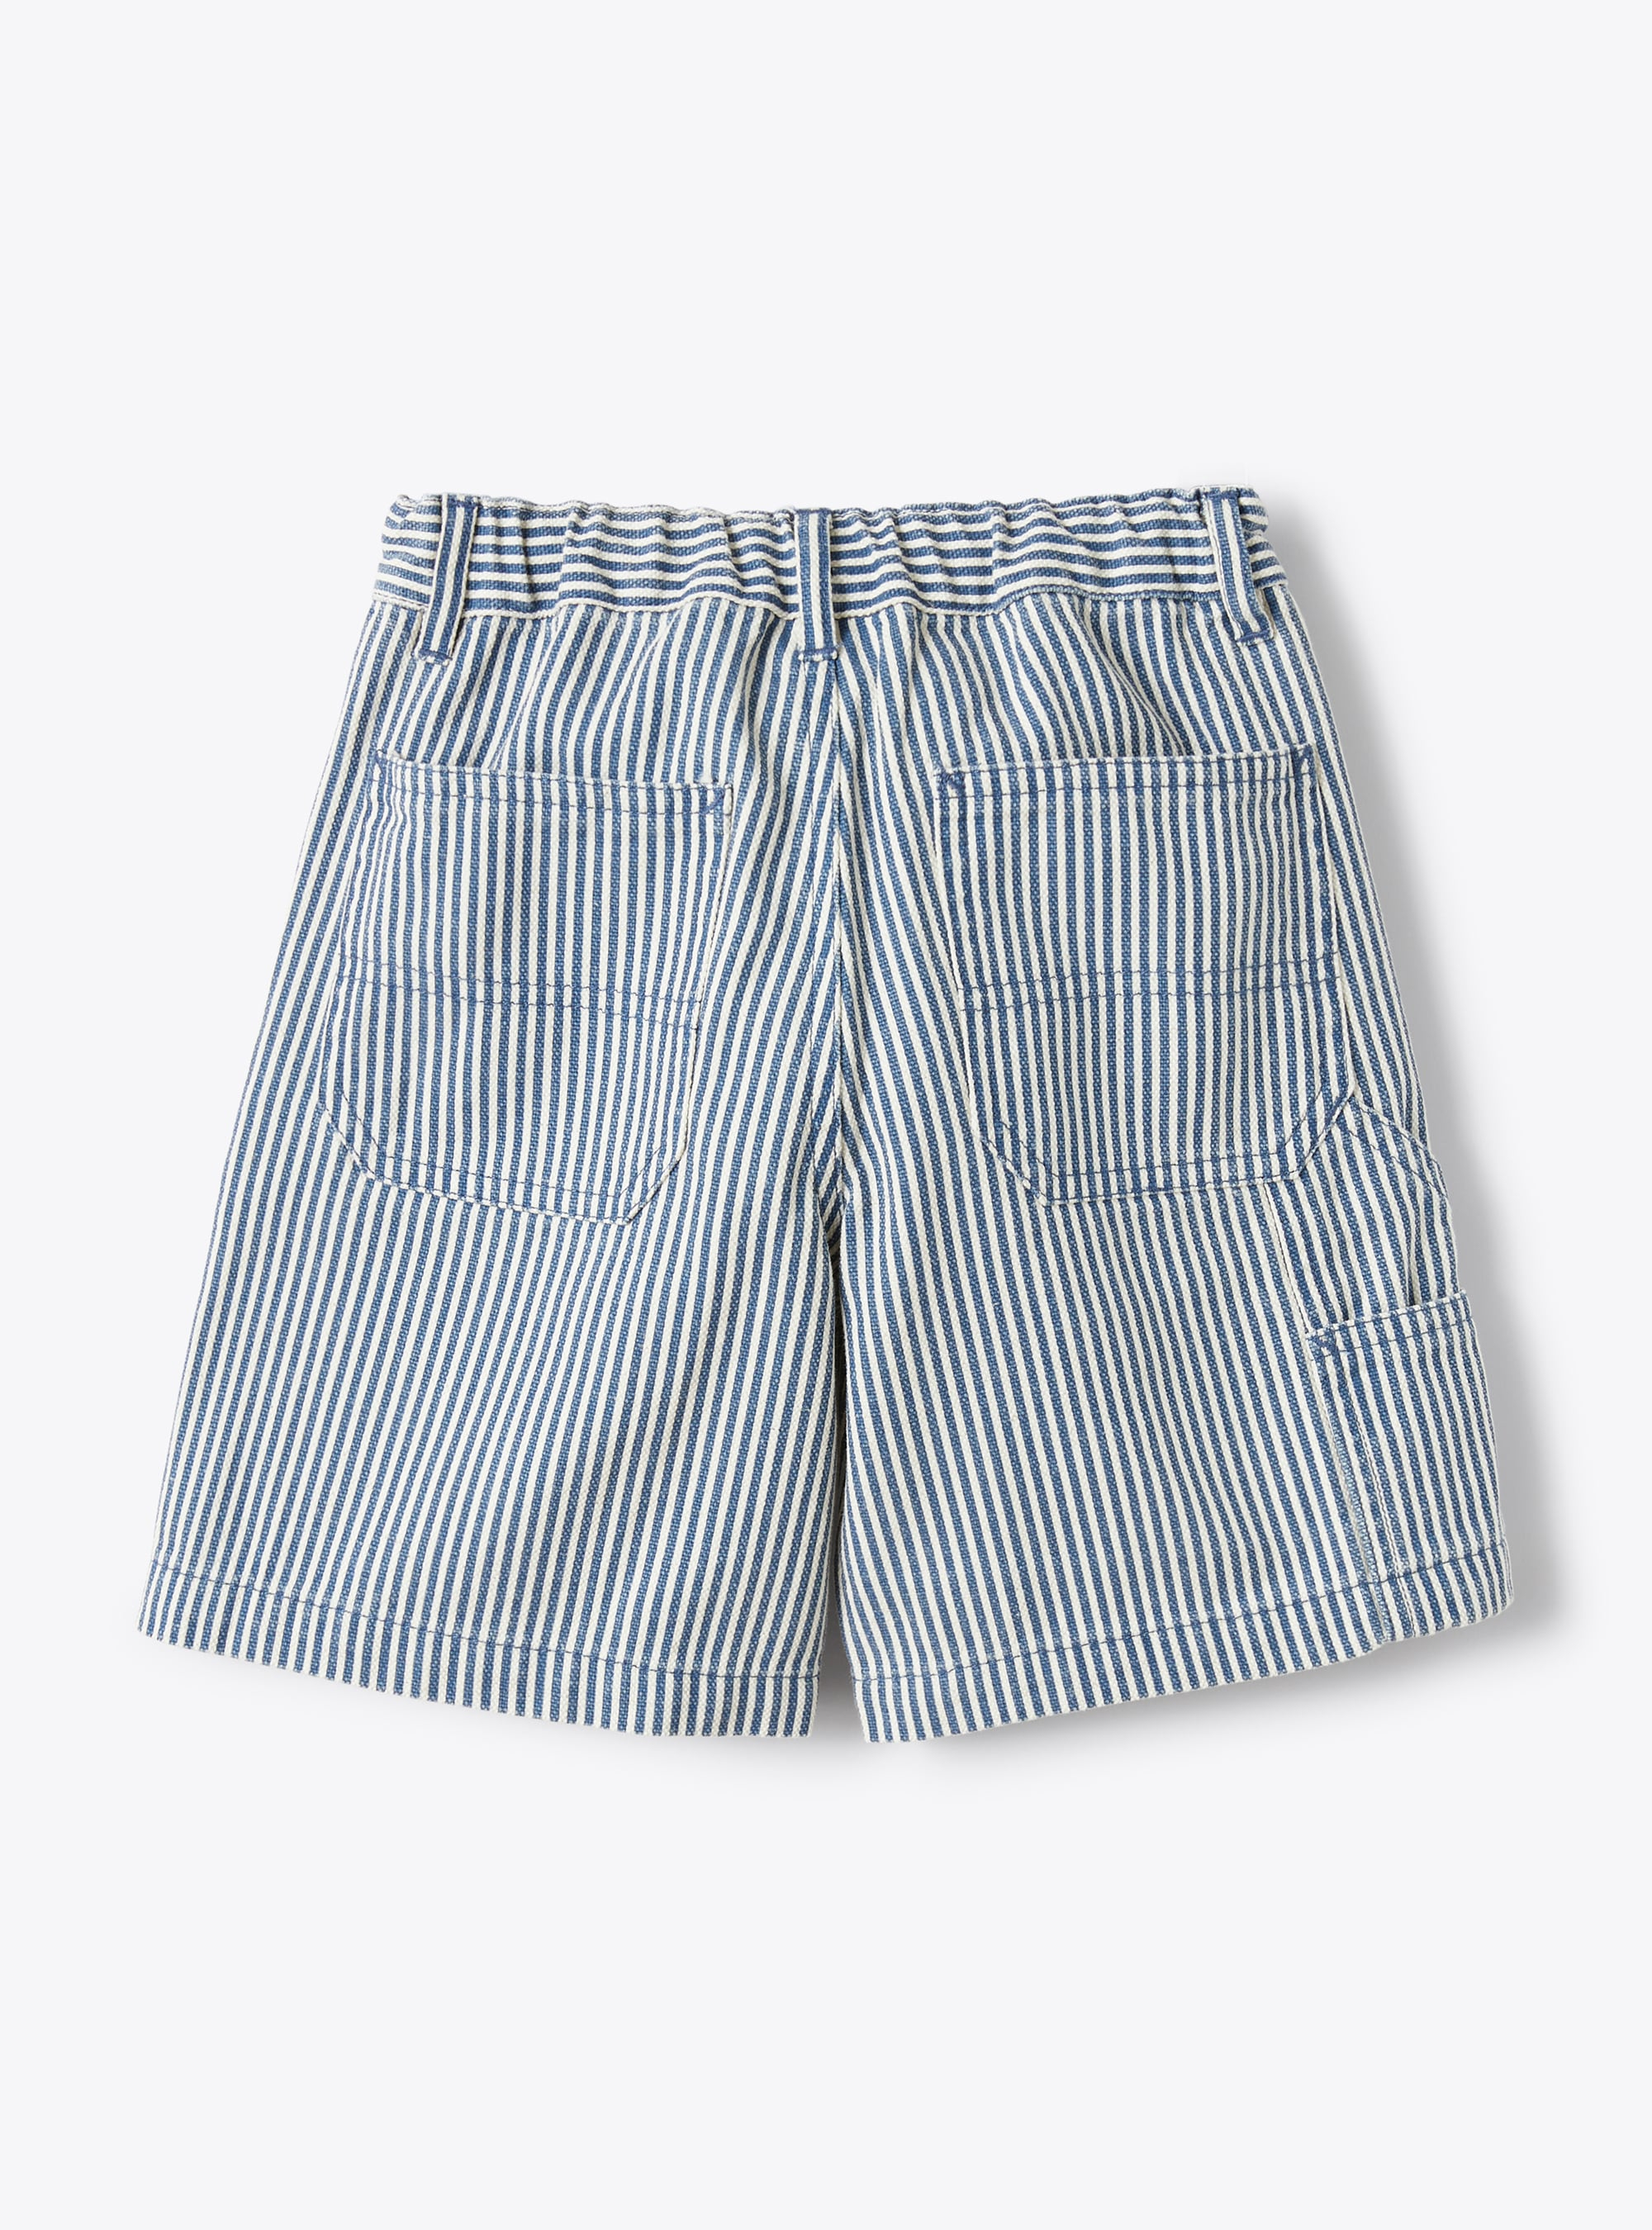 Bermuda shorts in a stripe pattern - Blue | Il Gufo